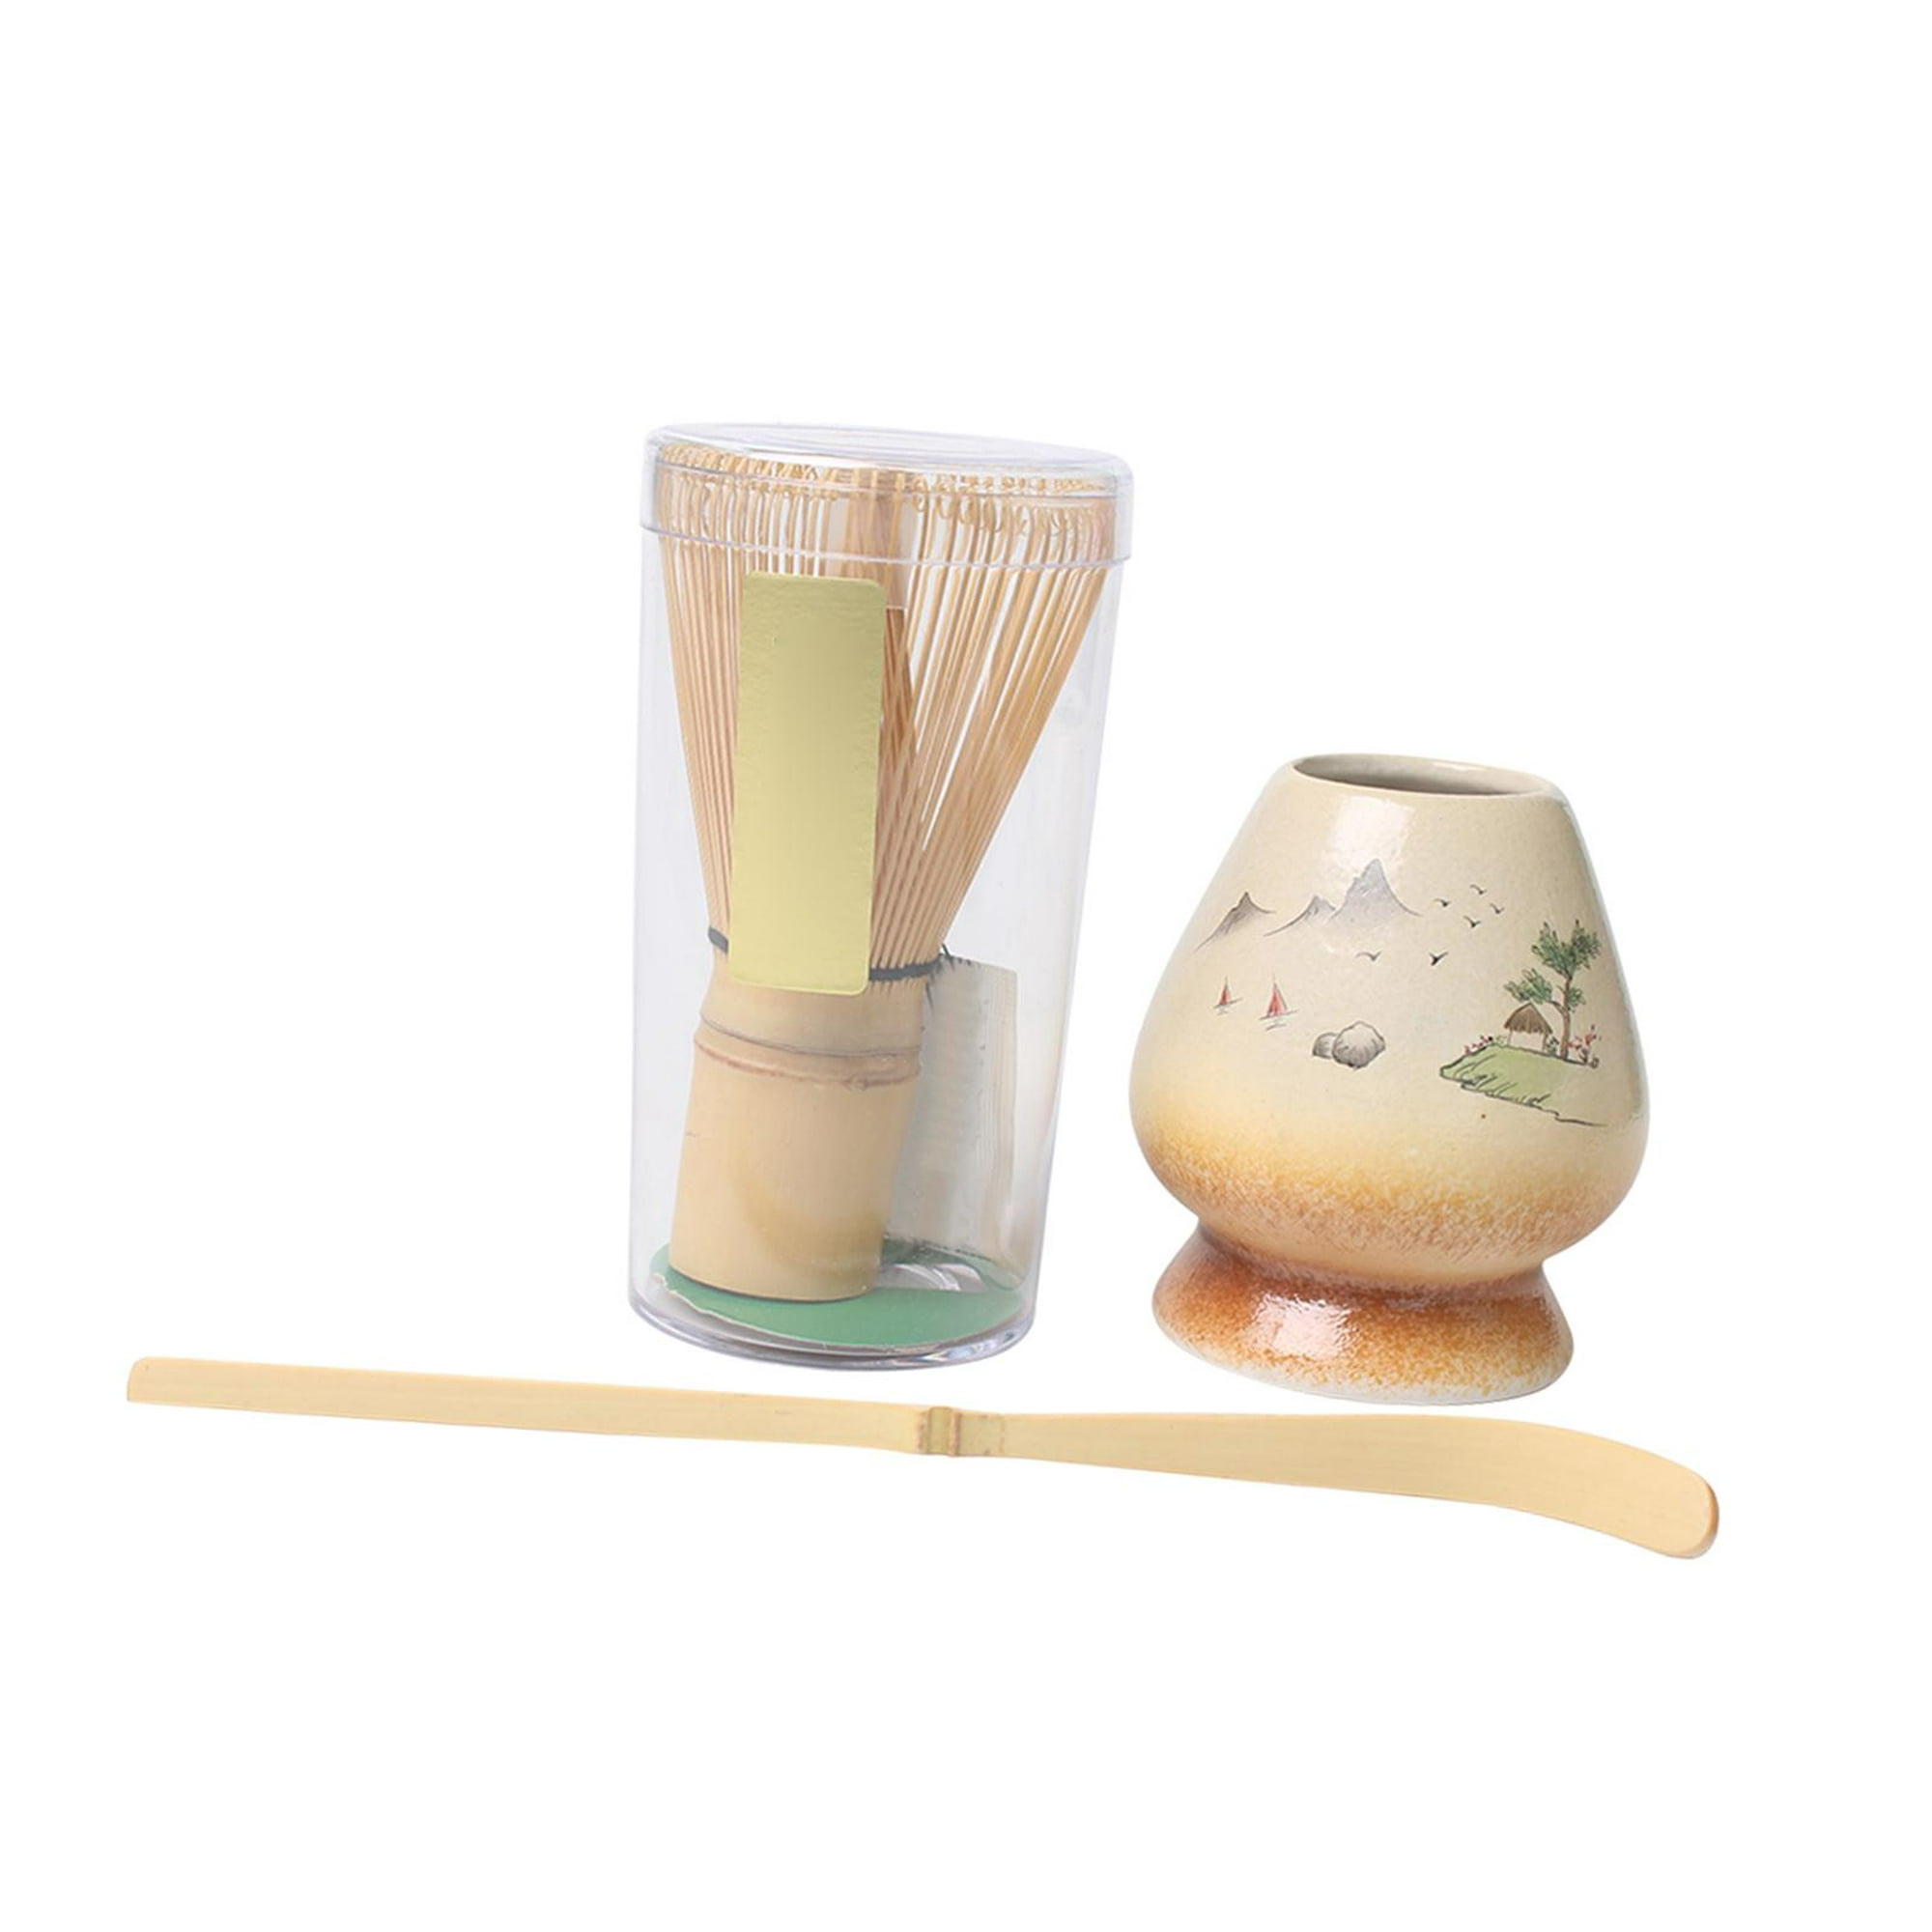 Matcha set con batidora de bambú